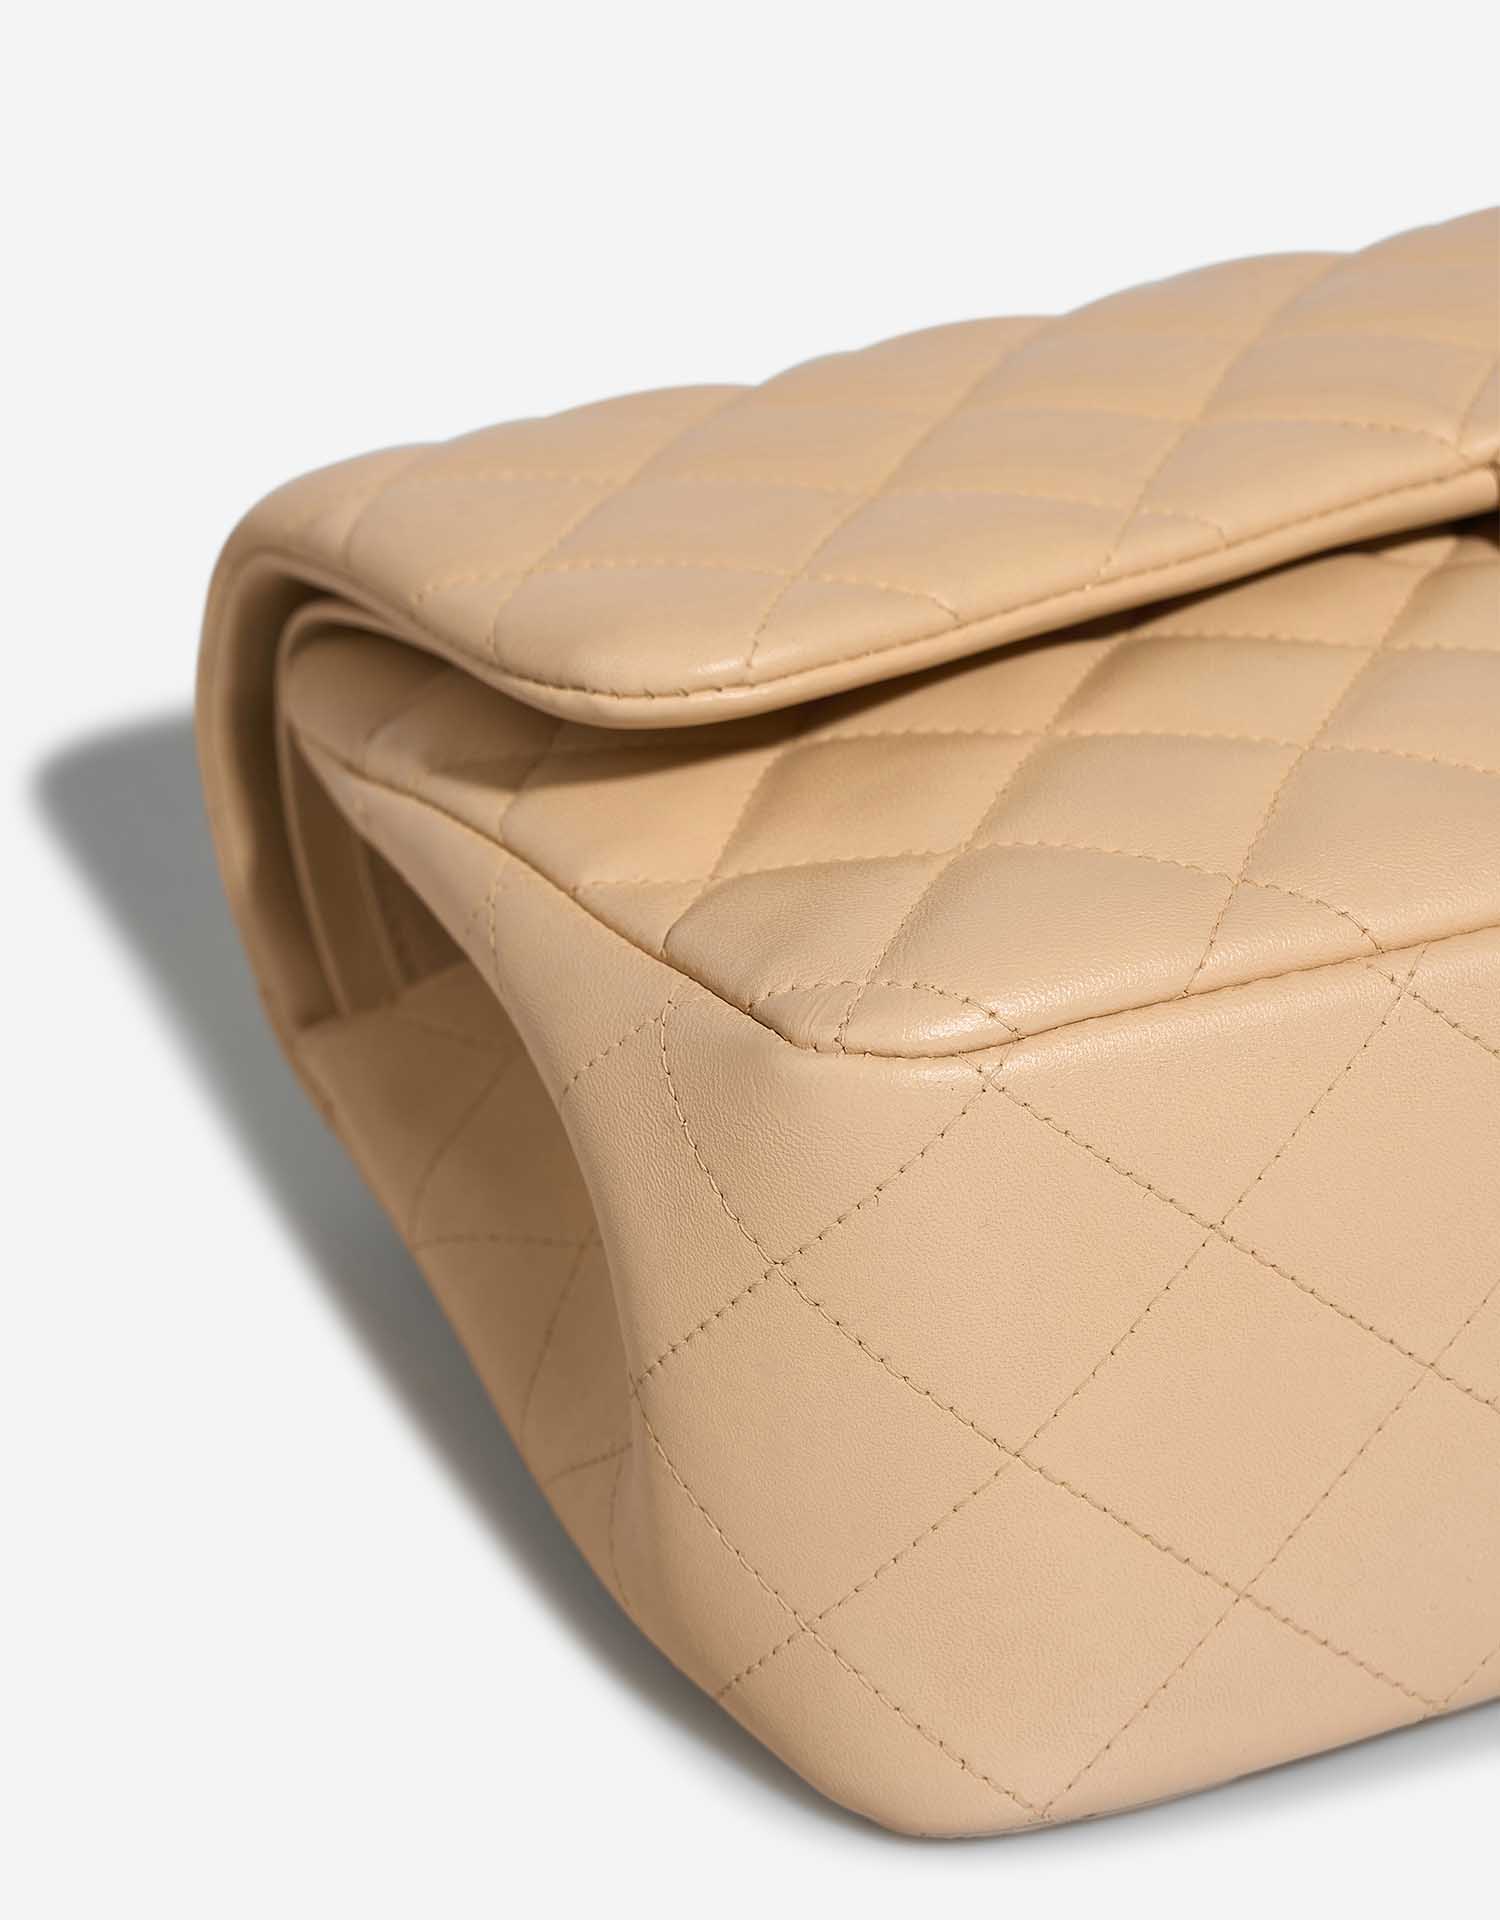 Chanel Timeless Jumbo Beige Gebrauchsspuren | Verkaufen Sie Ihre Designer-Tasche auf Saclab.com